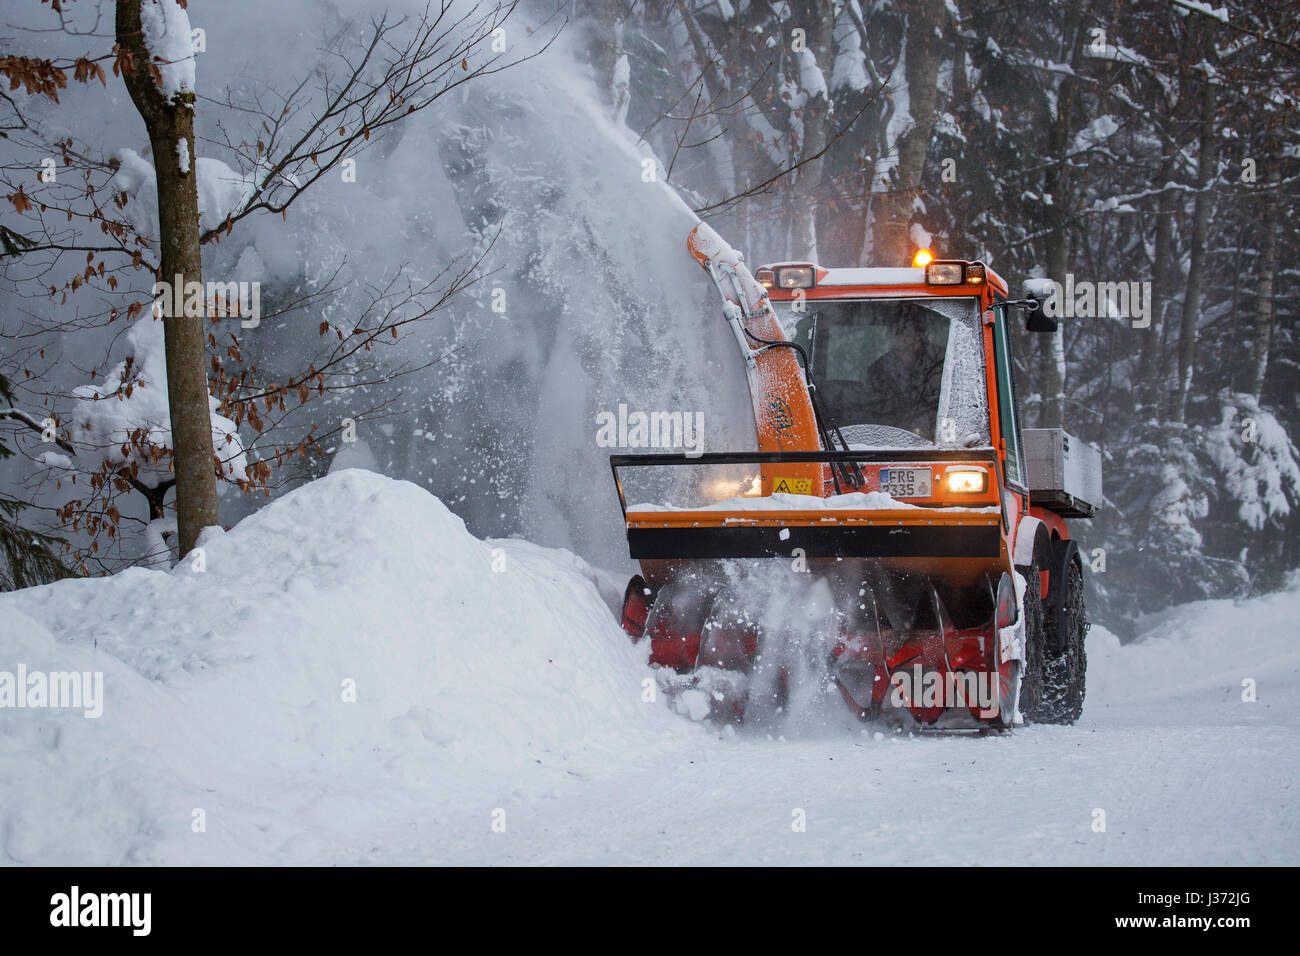 Halter C9700H kommunaler Traktor mit Schneefräse Schneeräumung von Straße im Wald nach starkem Schneefall im winter Stockfoto